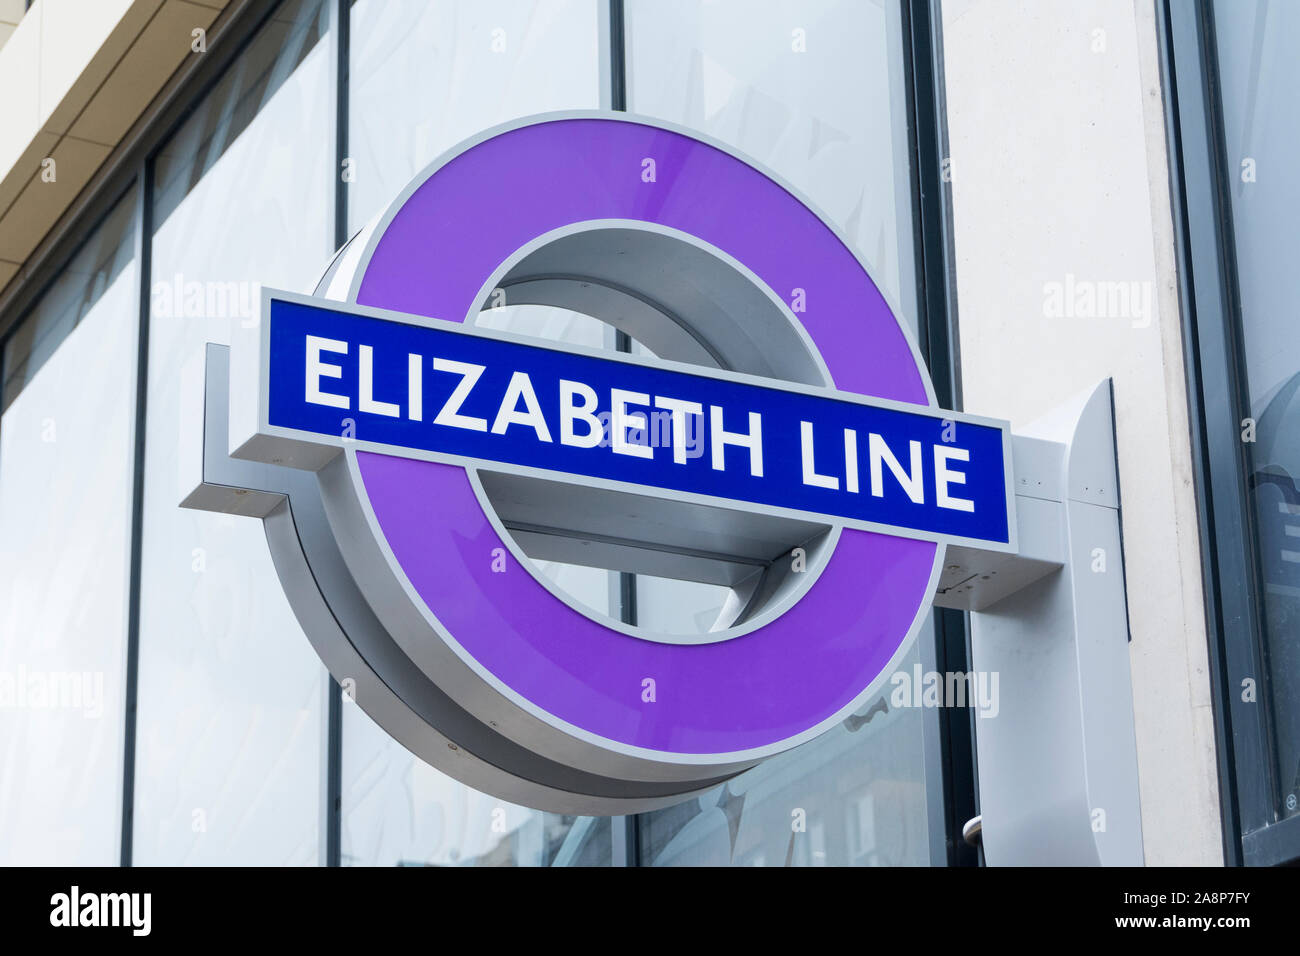 The new Elizabeth Line signage at Farringdon Station, City of London, England, UK Stock Photo